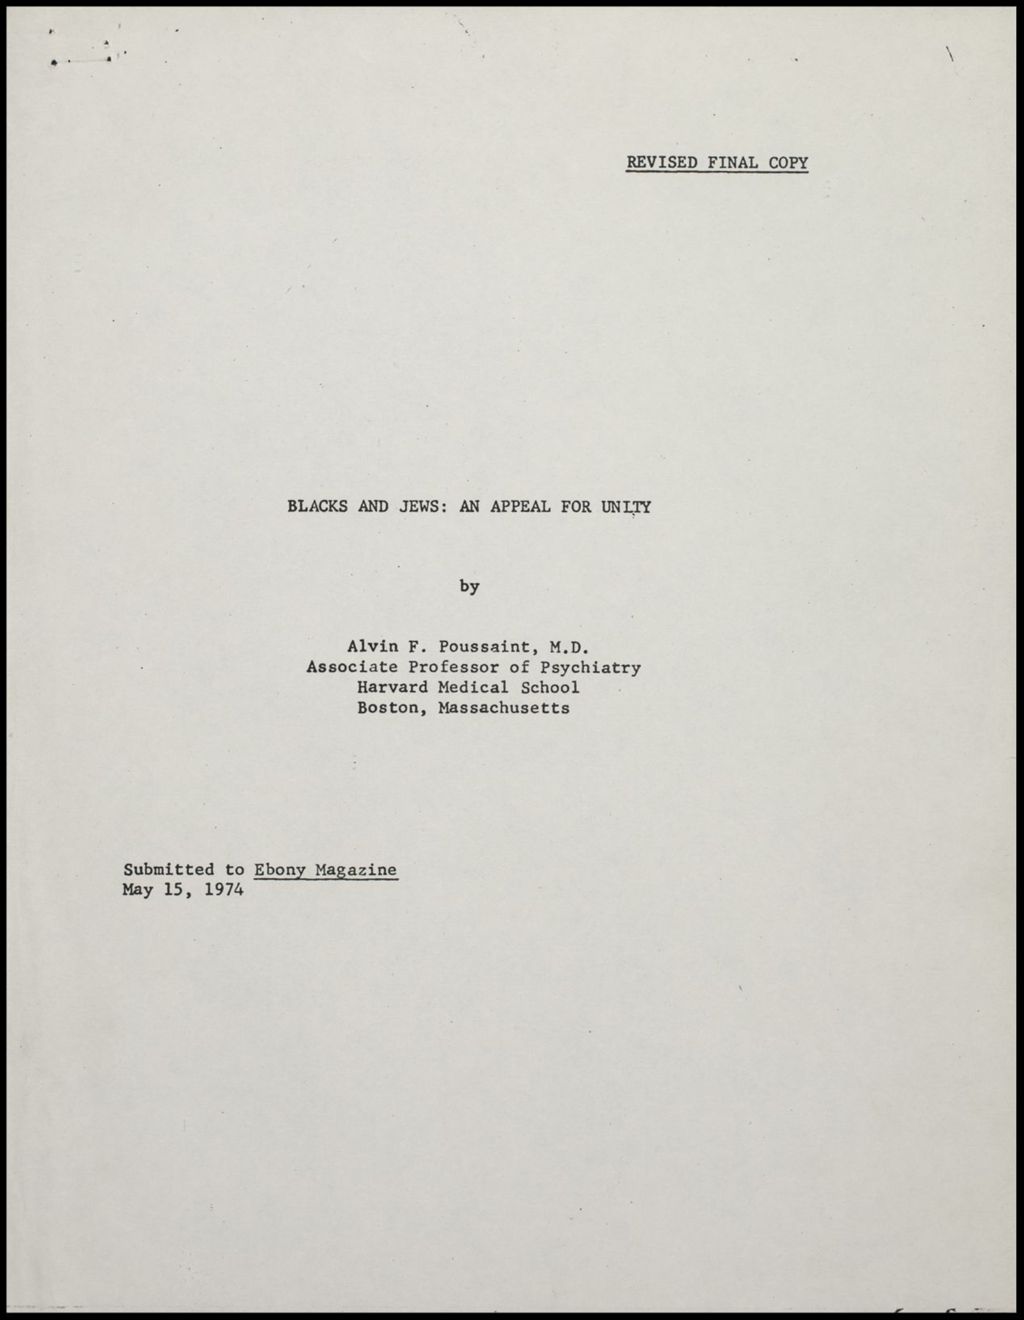 Miniature of Alvin Poussaint - articles, 1974 and 1966 (Folder 16)